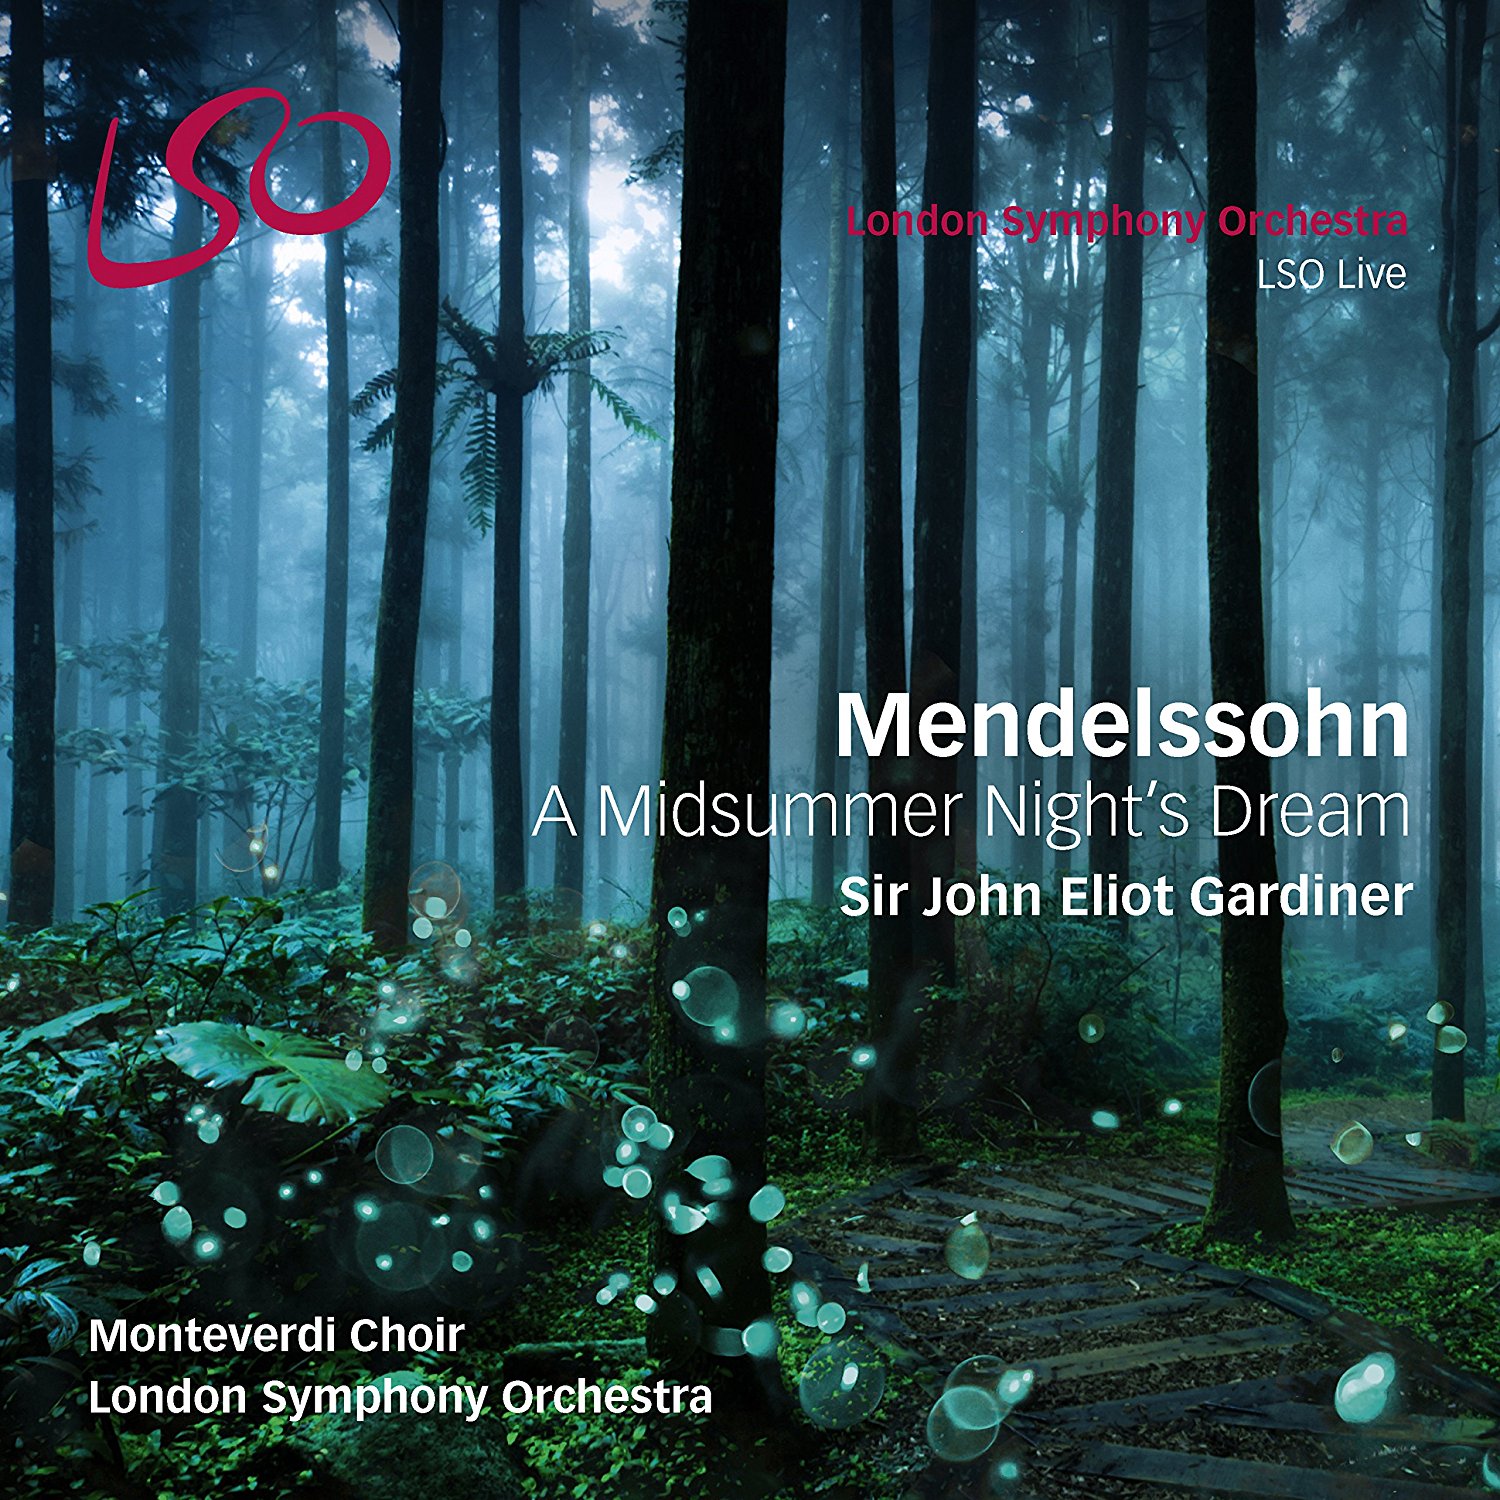 LSO Mendelssohn